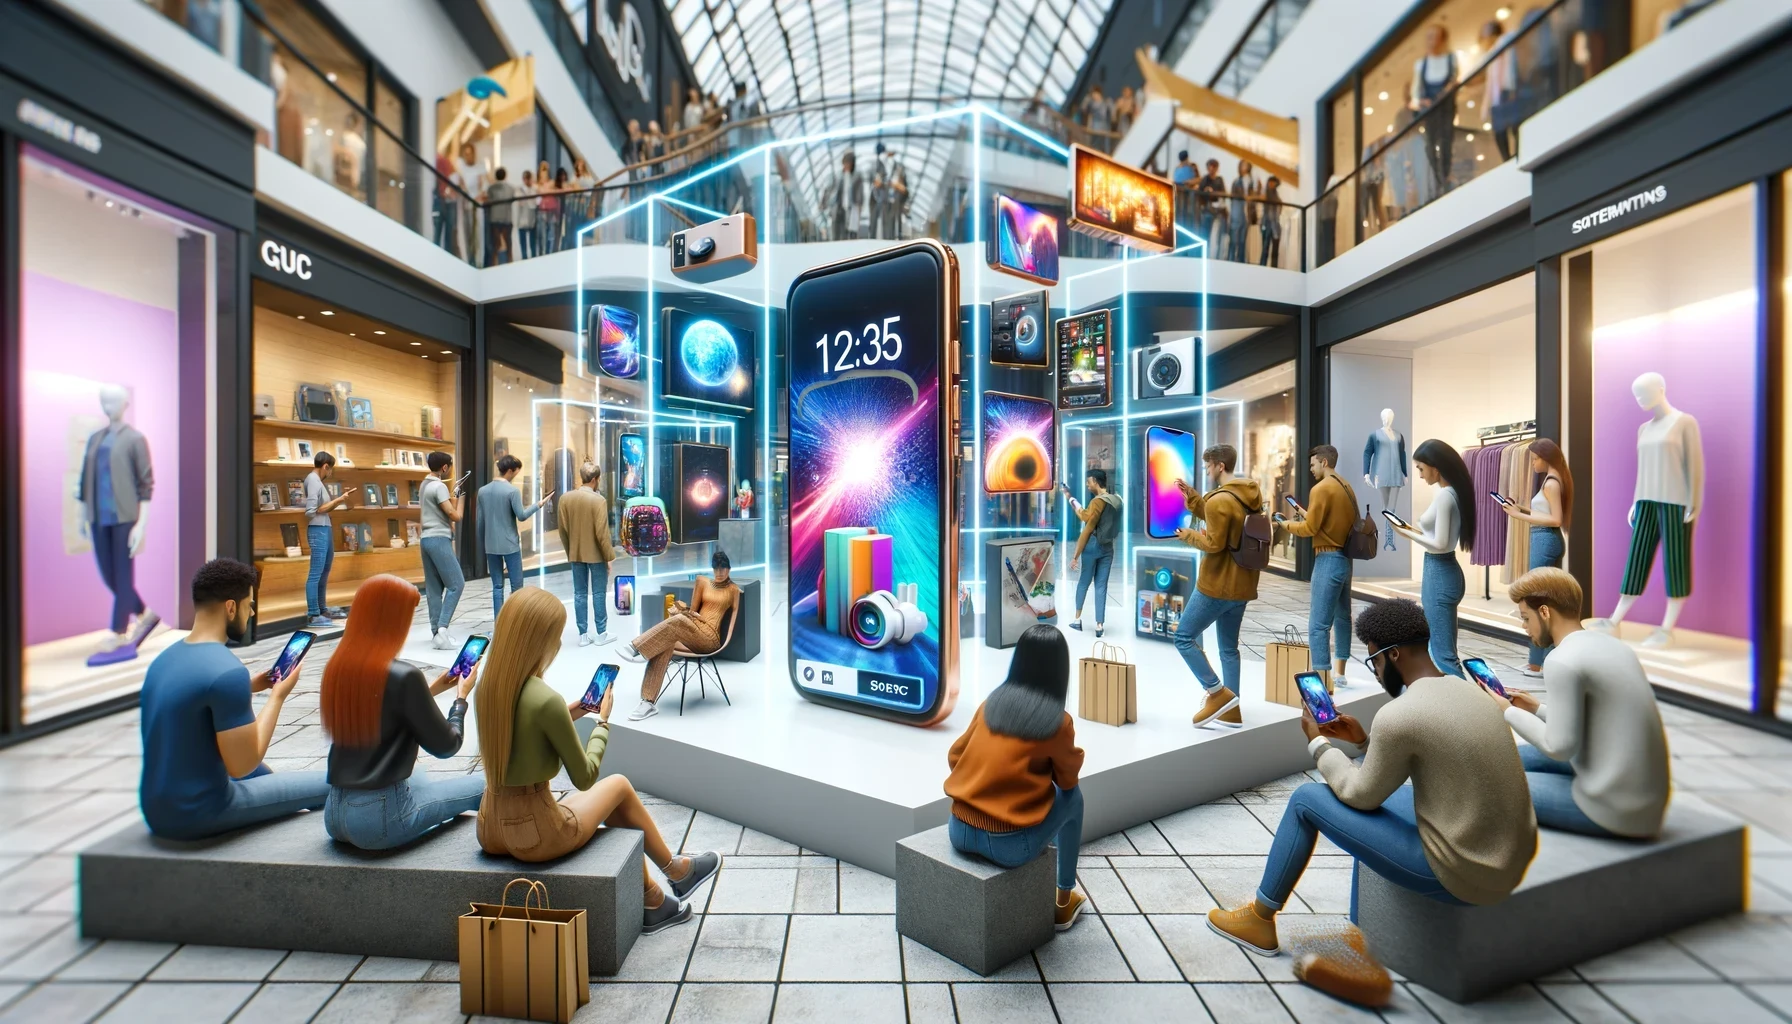 Una activación de marca interactiva en un centro comercial, donde los consumidores interactúan con pantallas de realidad aumentada que muestran nuevos productos.